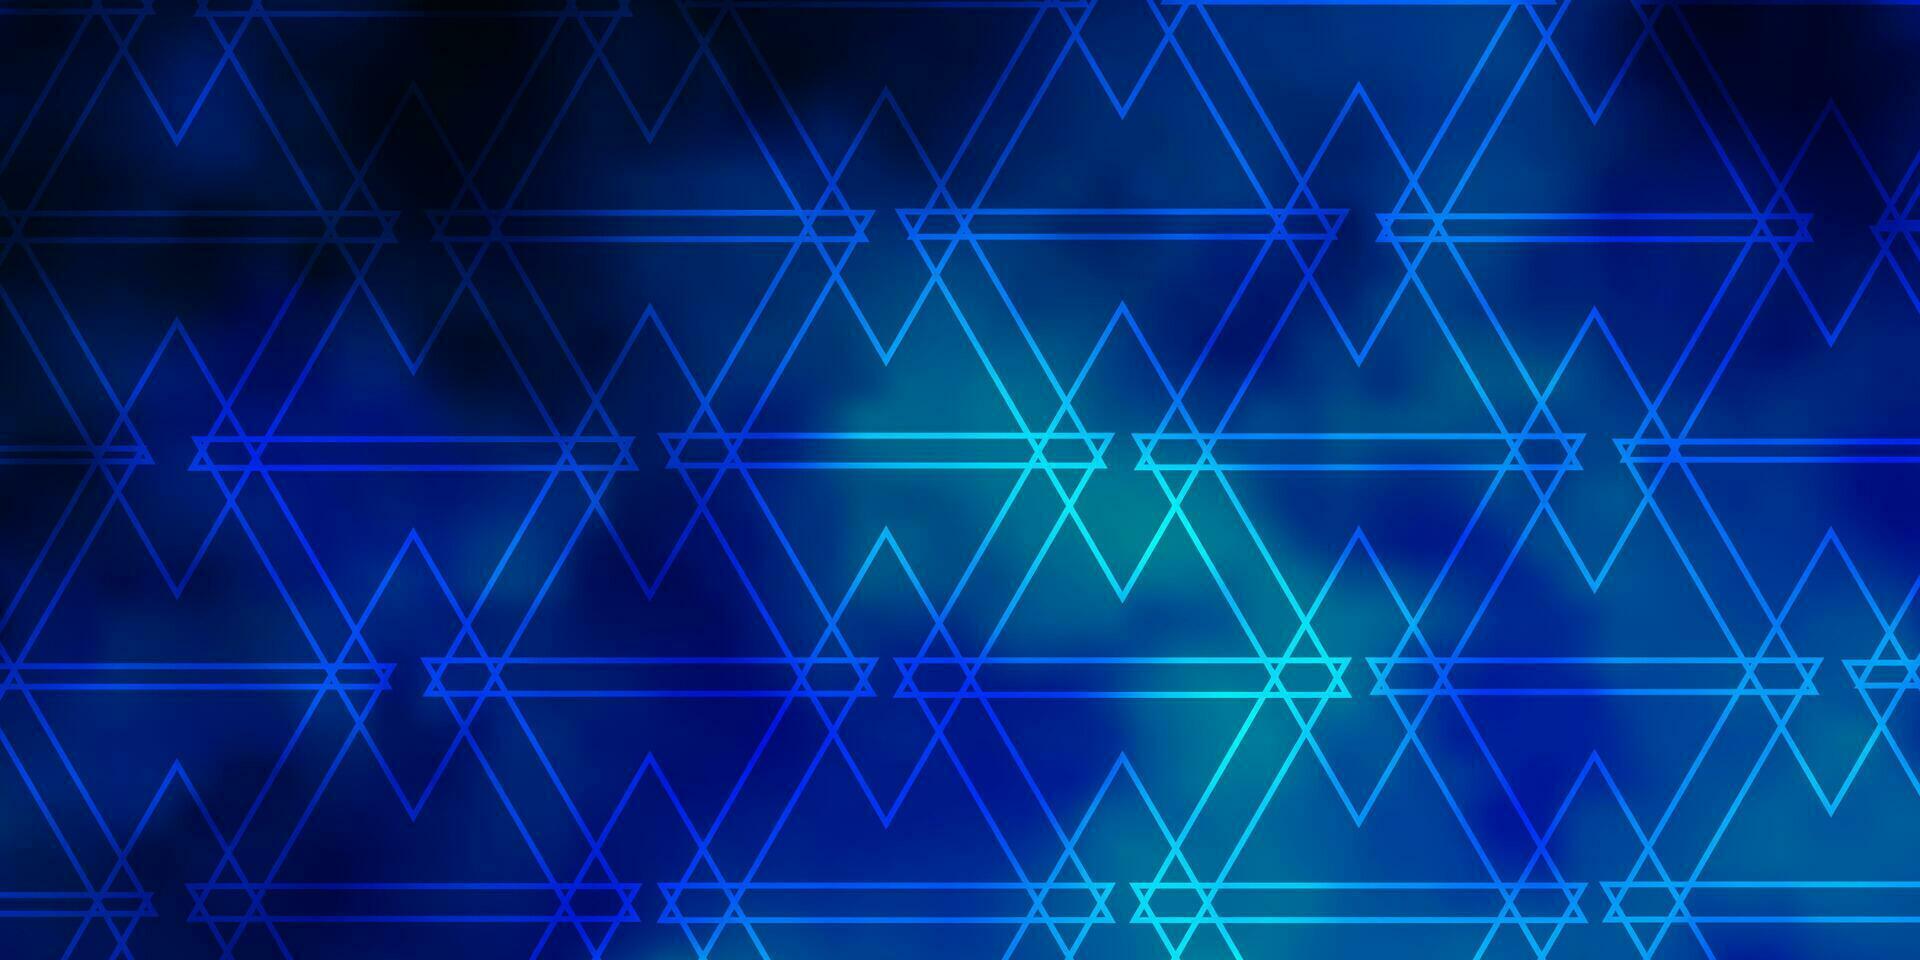 padrão de vetor azul claro com estilo poligonal.